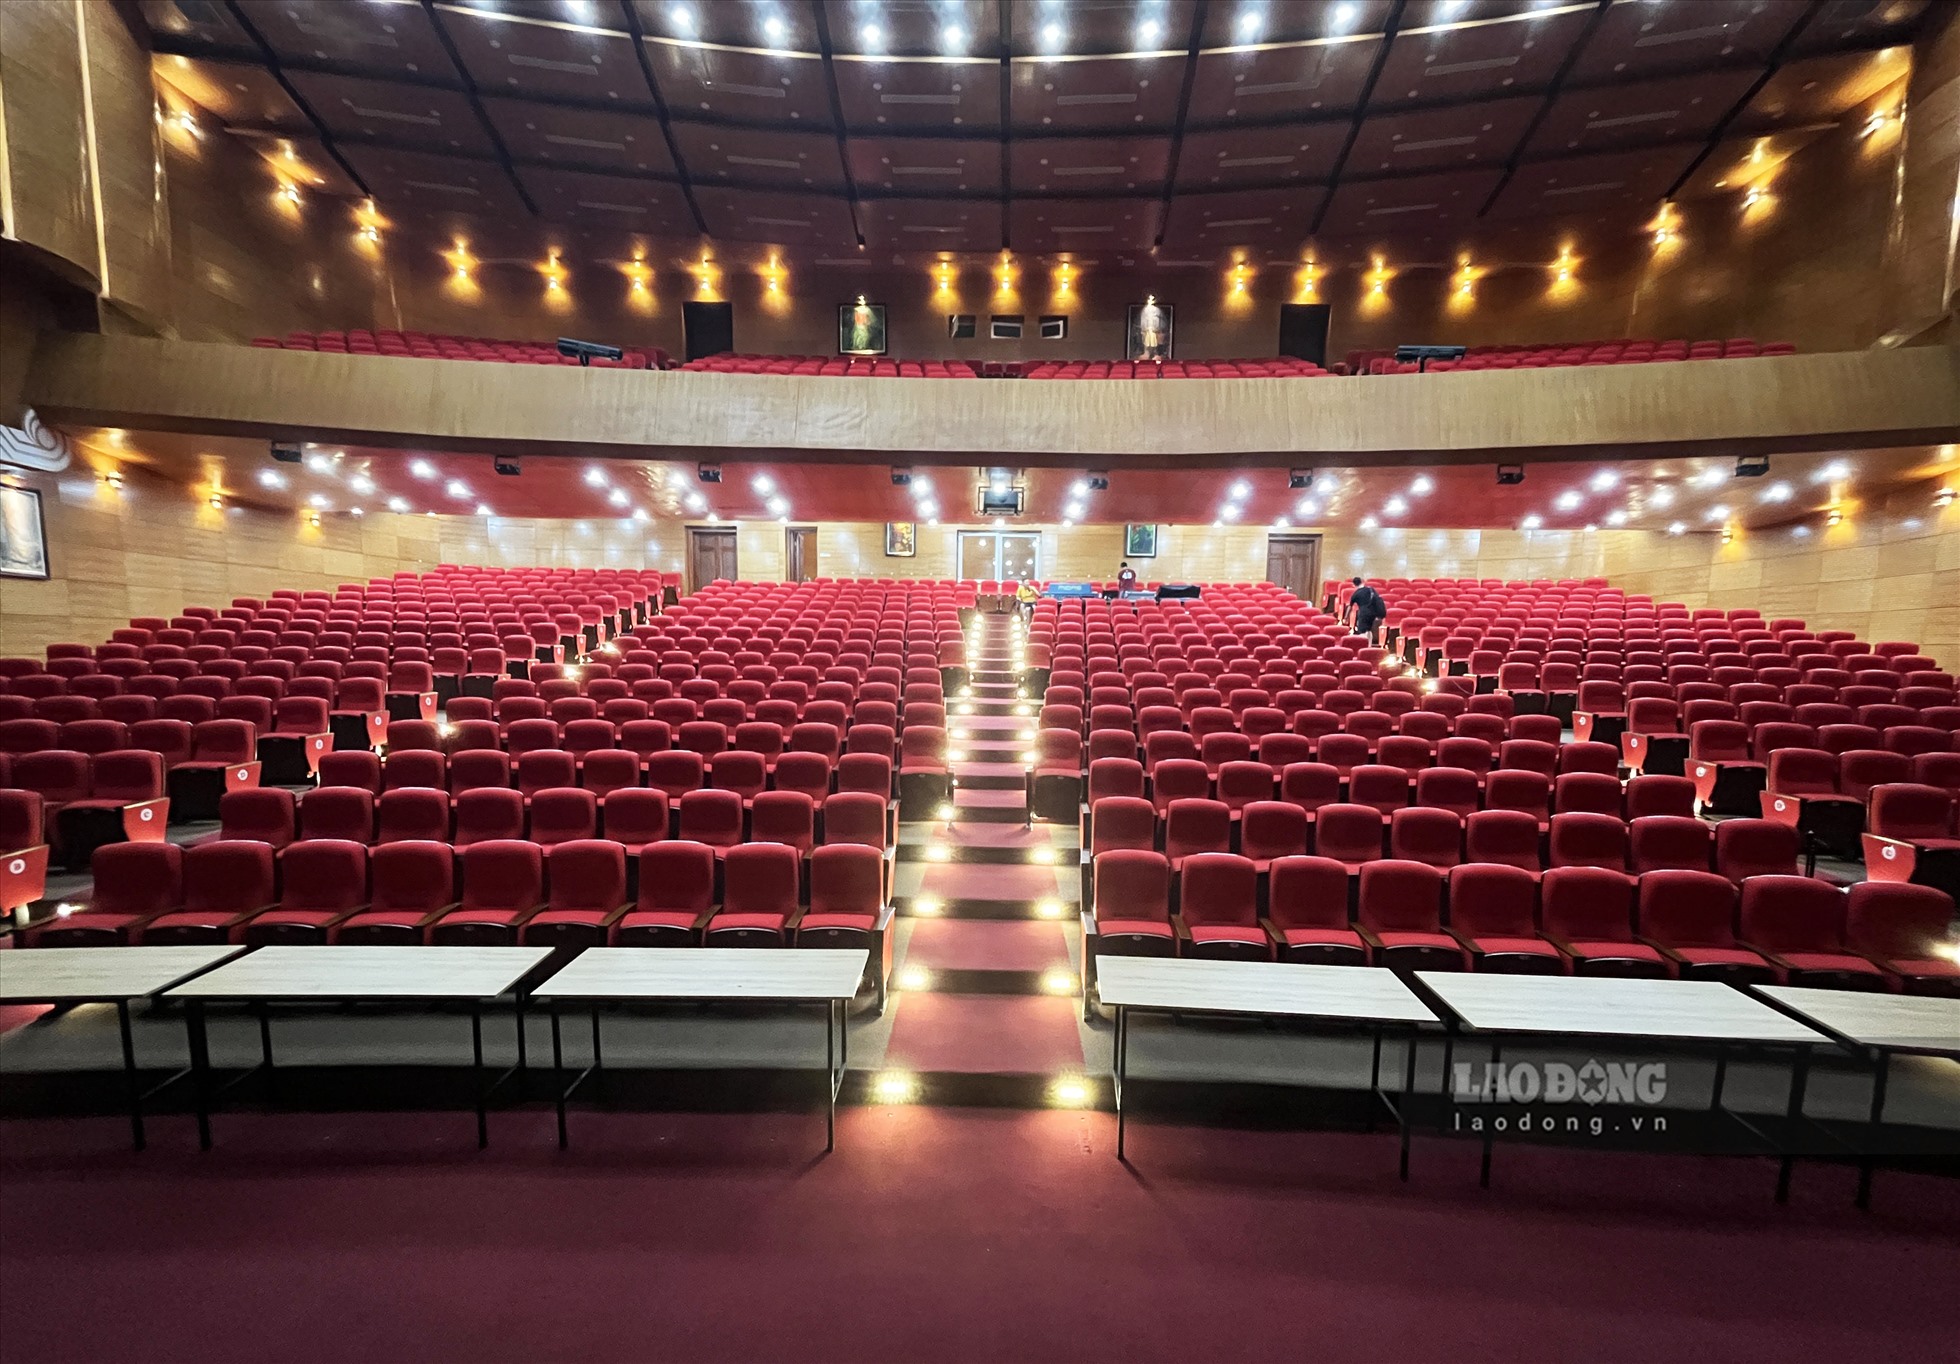 Trung tâm của nhà hát Ca múa nhạc dân gian Việt Bắc là phòng biểu diễn chính với 1.200 chỗ ngồi. Ngoài ra còn có 2 phòng hội nghị, hội thảo mỗi phòng 200 chỗ.